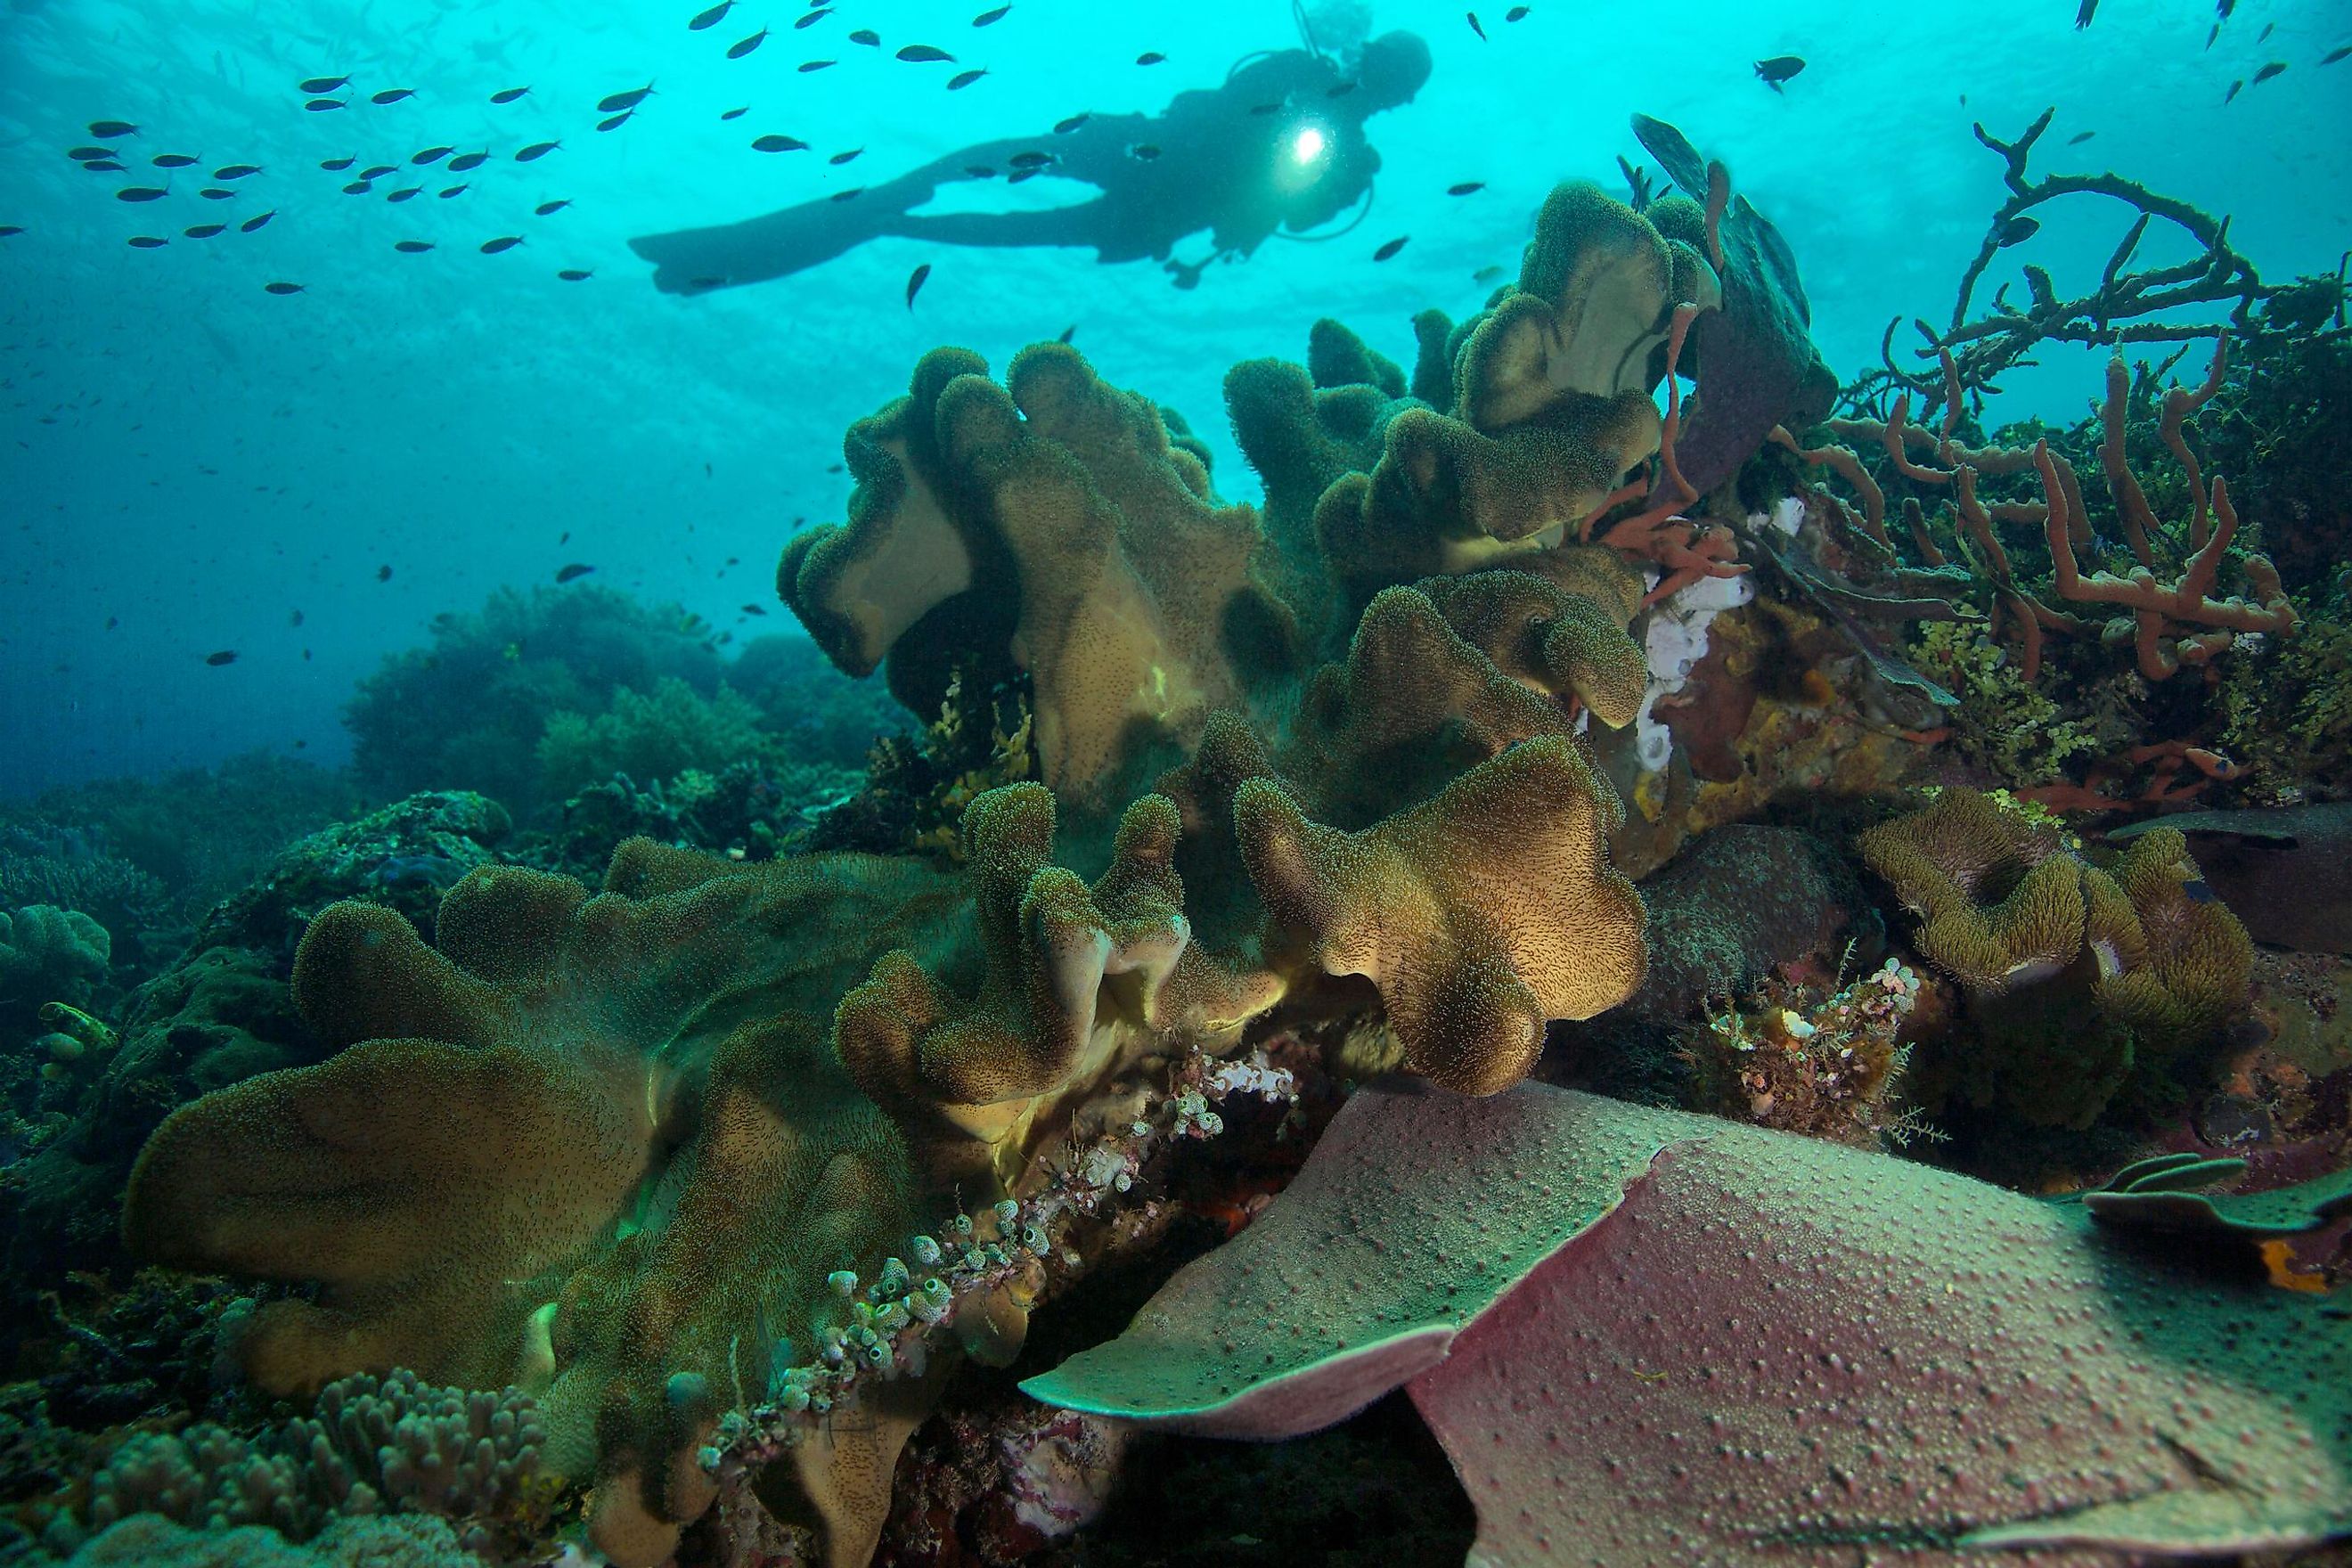 Ceram Sea, Raja Ampat, West Papua, Indonesia.